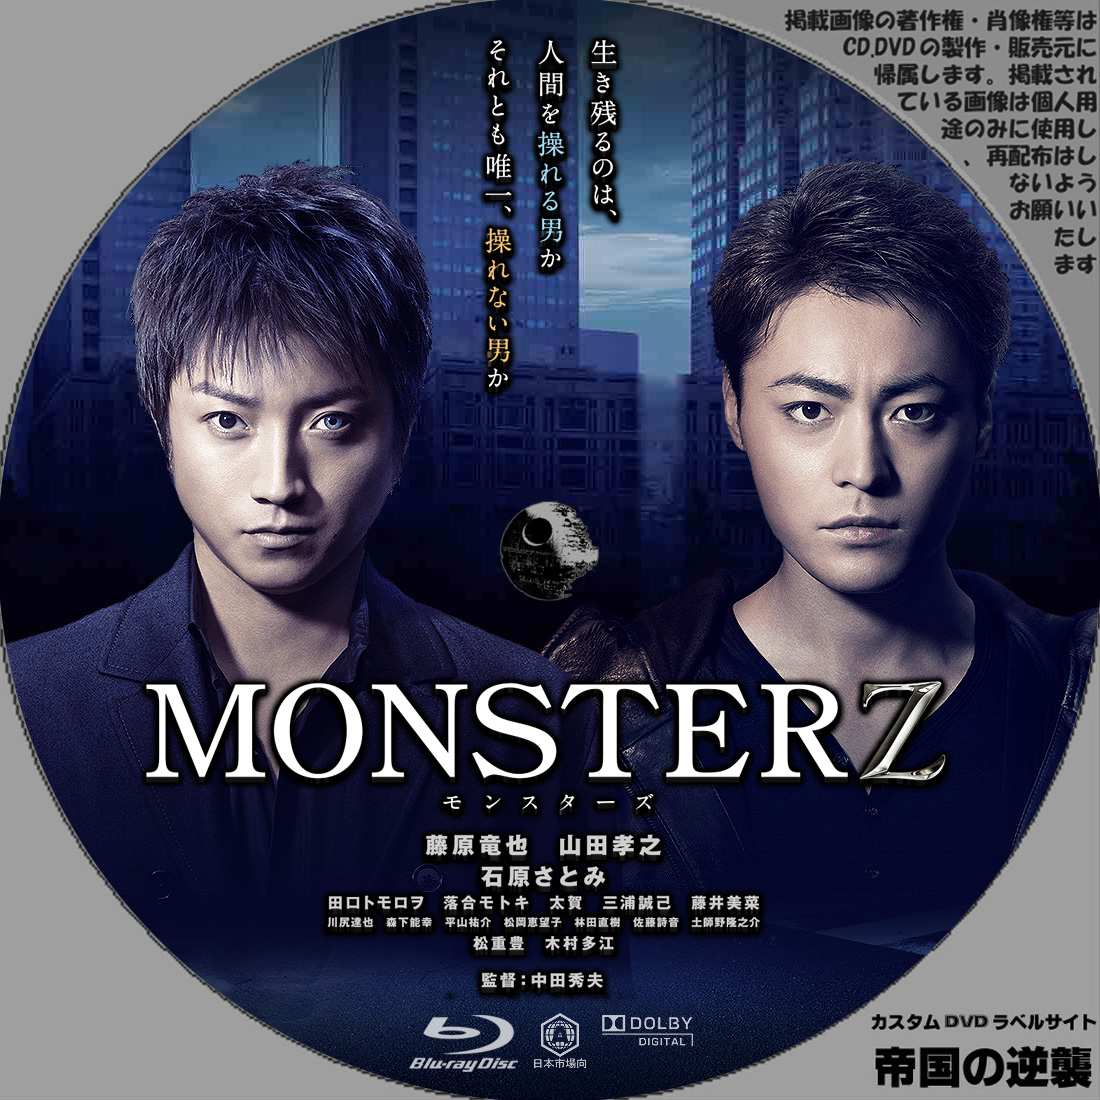 Monsterz モンスターズ Dvd ブルーレイラベル 新作映画のdvdラベル 続 帝国の逆襲